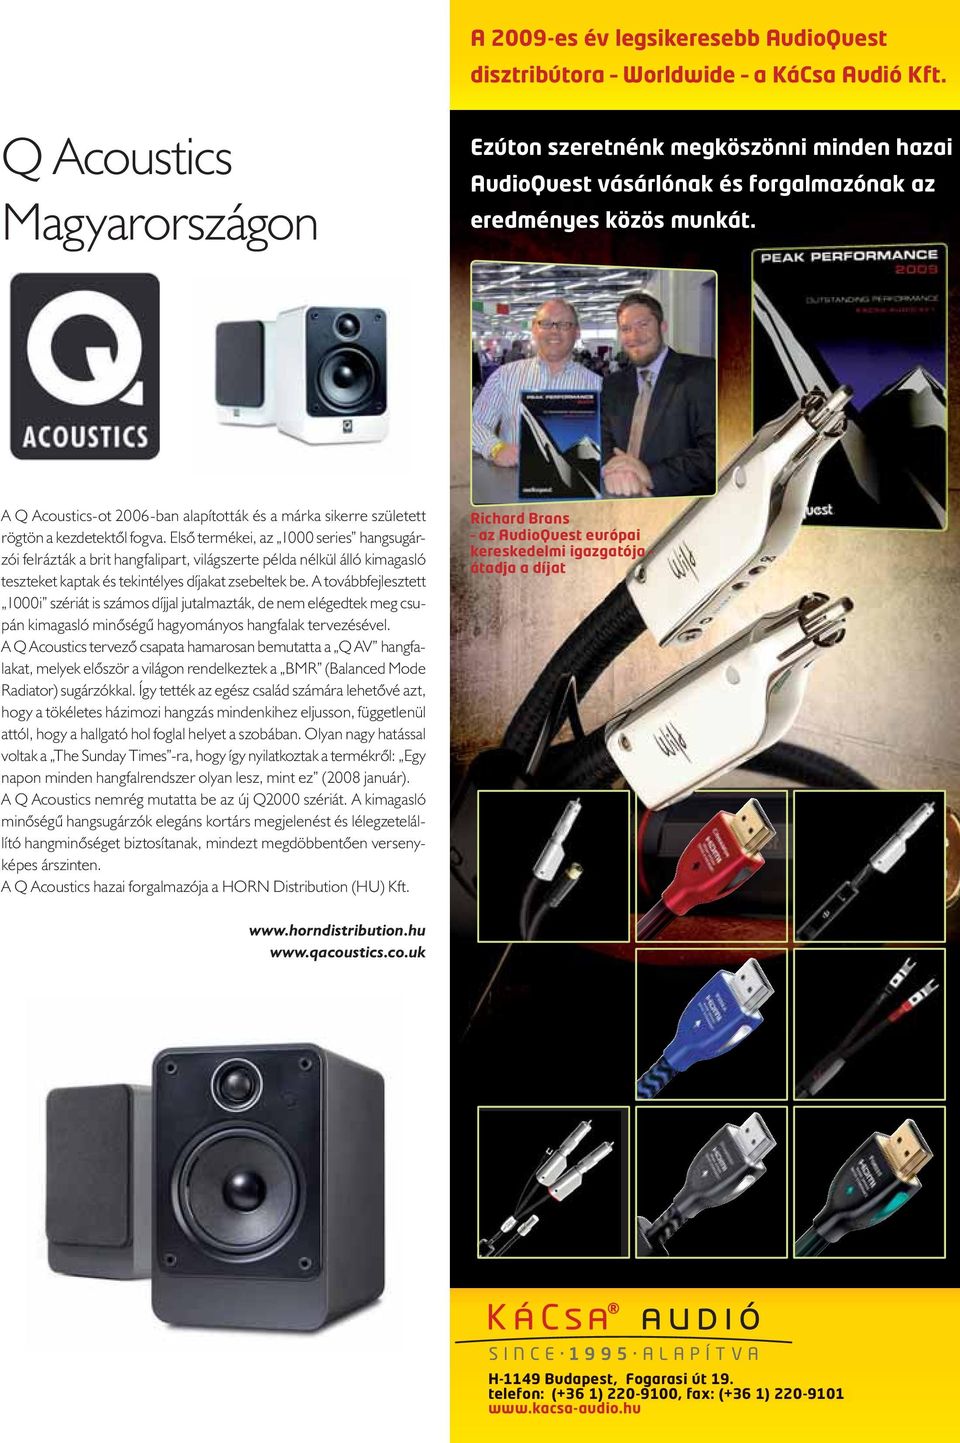 A Q Acoustics-ot 2006-ban alapították és a márka sikerre született rögtön a kezdetektől fogva.